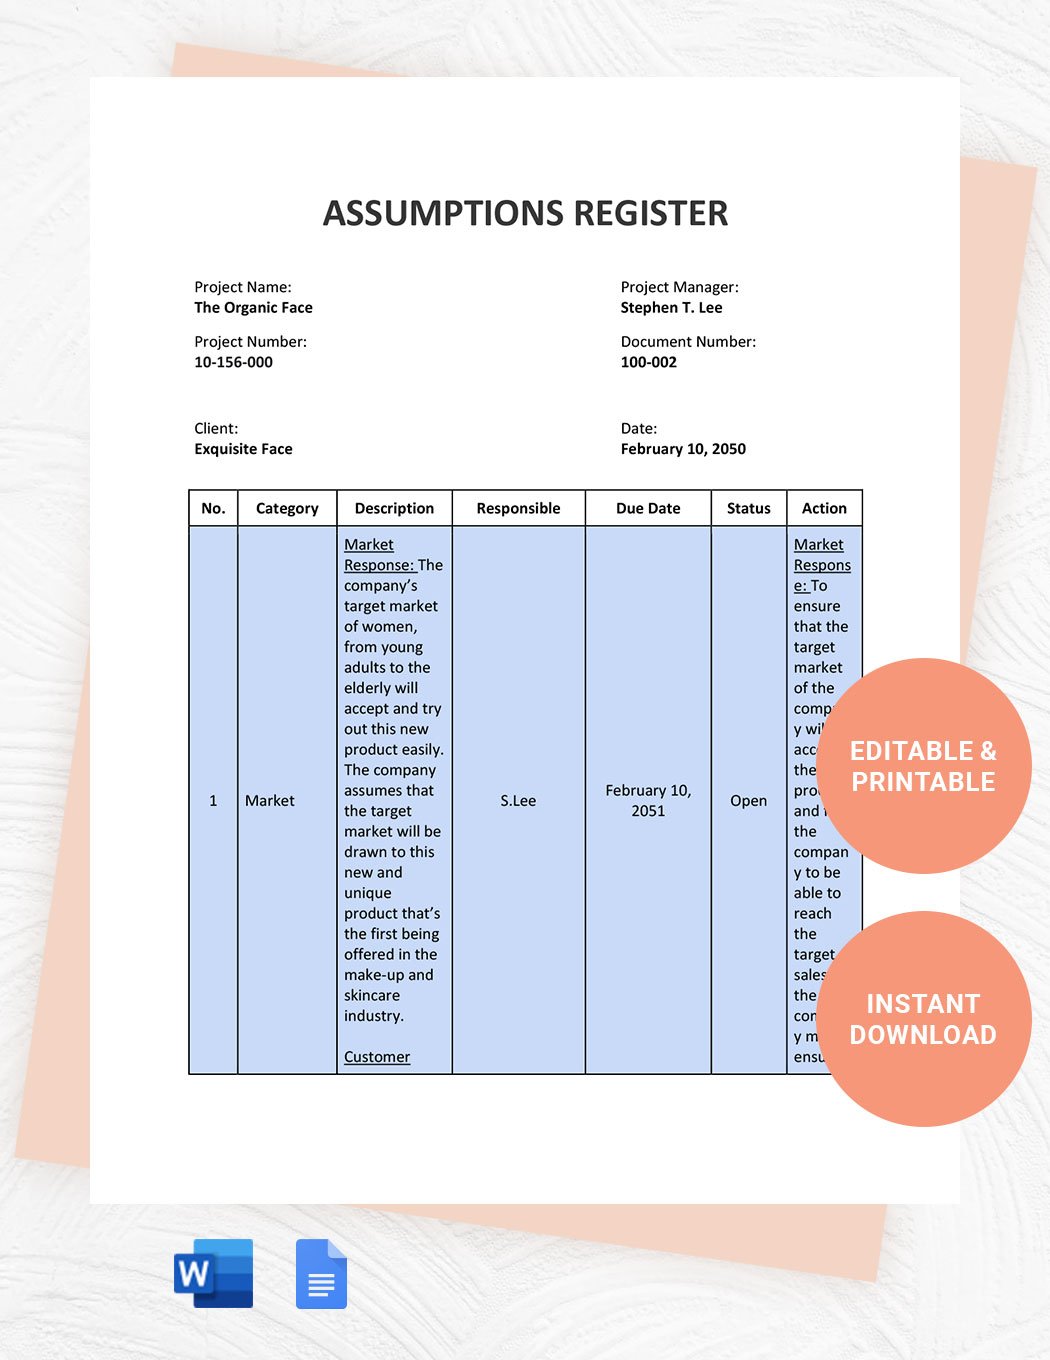 Assumptions Register Template